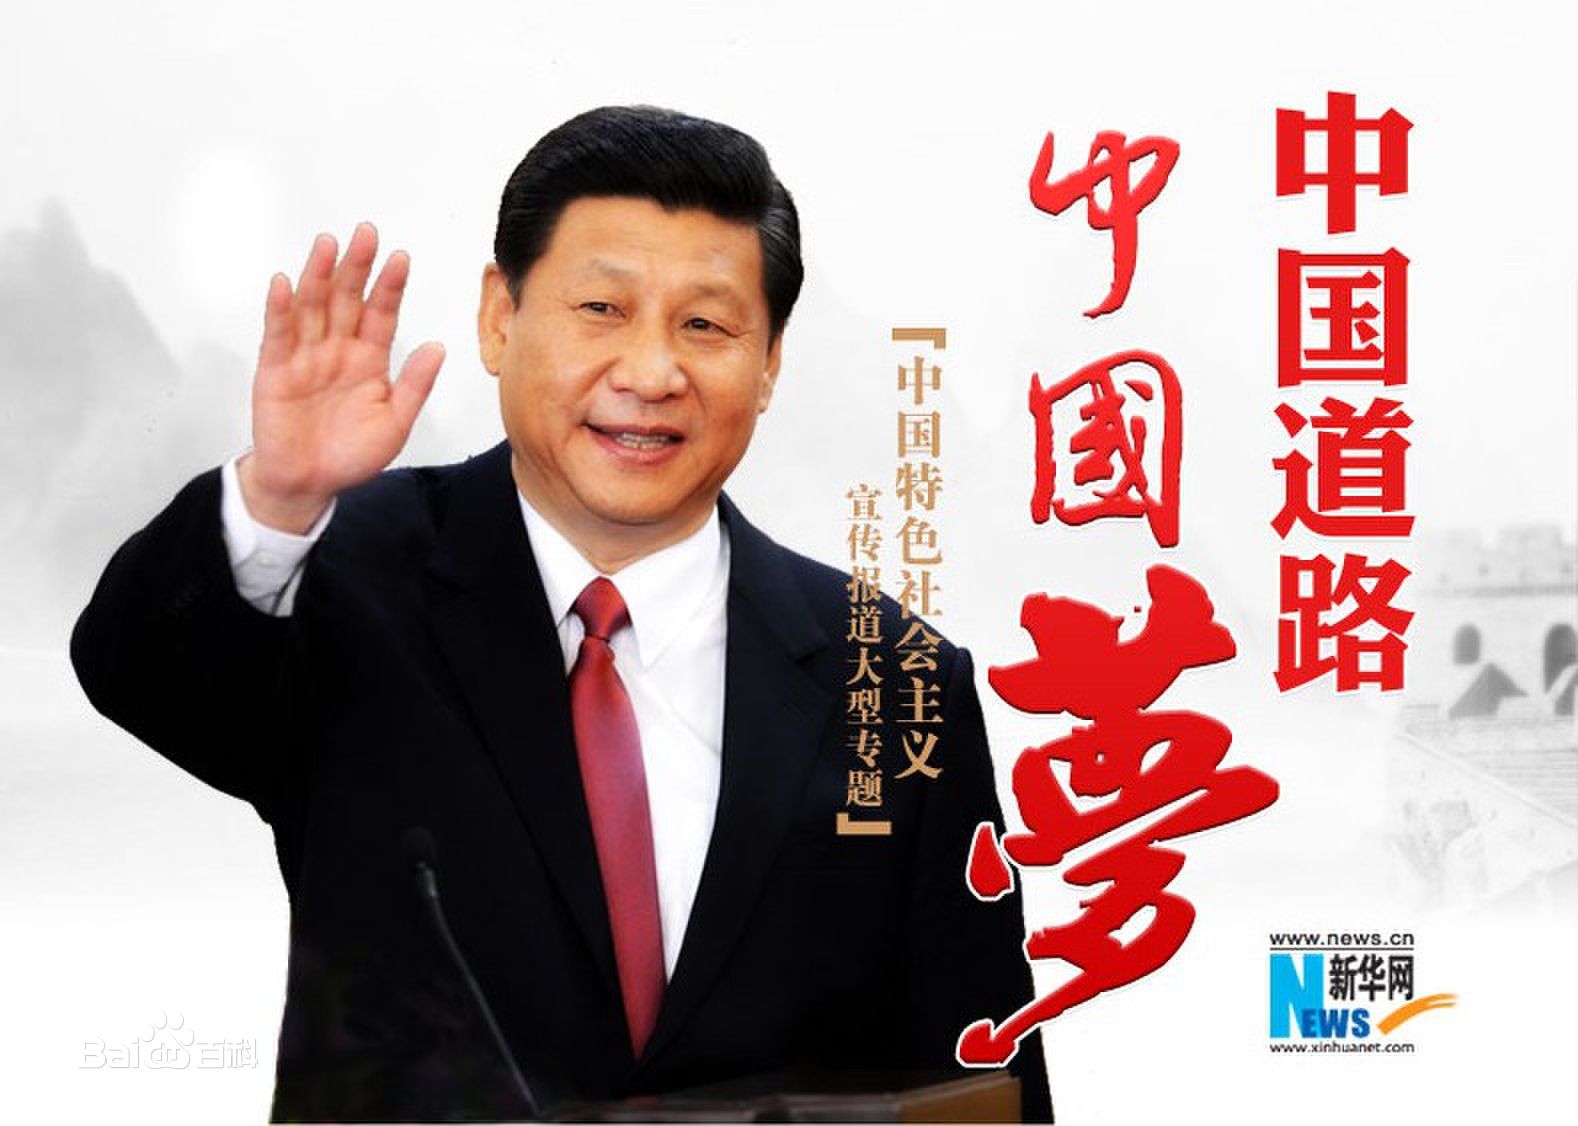 中国梦的本质是国家富强、民族振兴、人民幸福